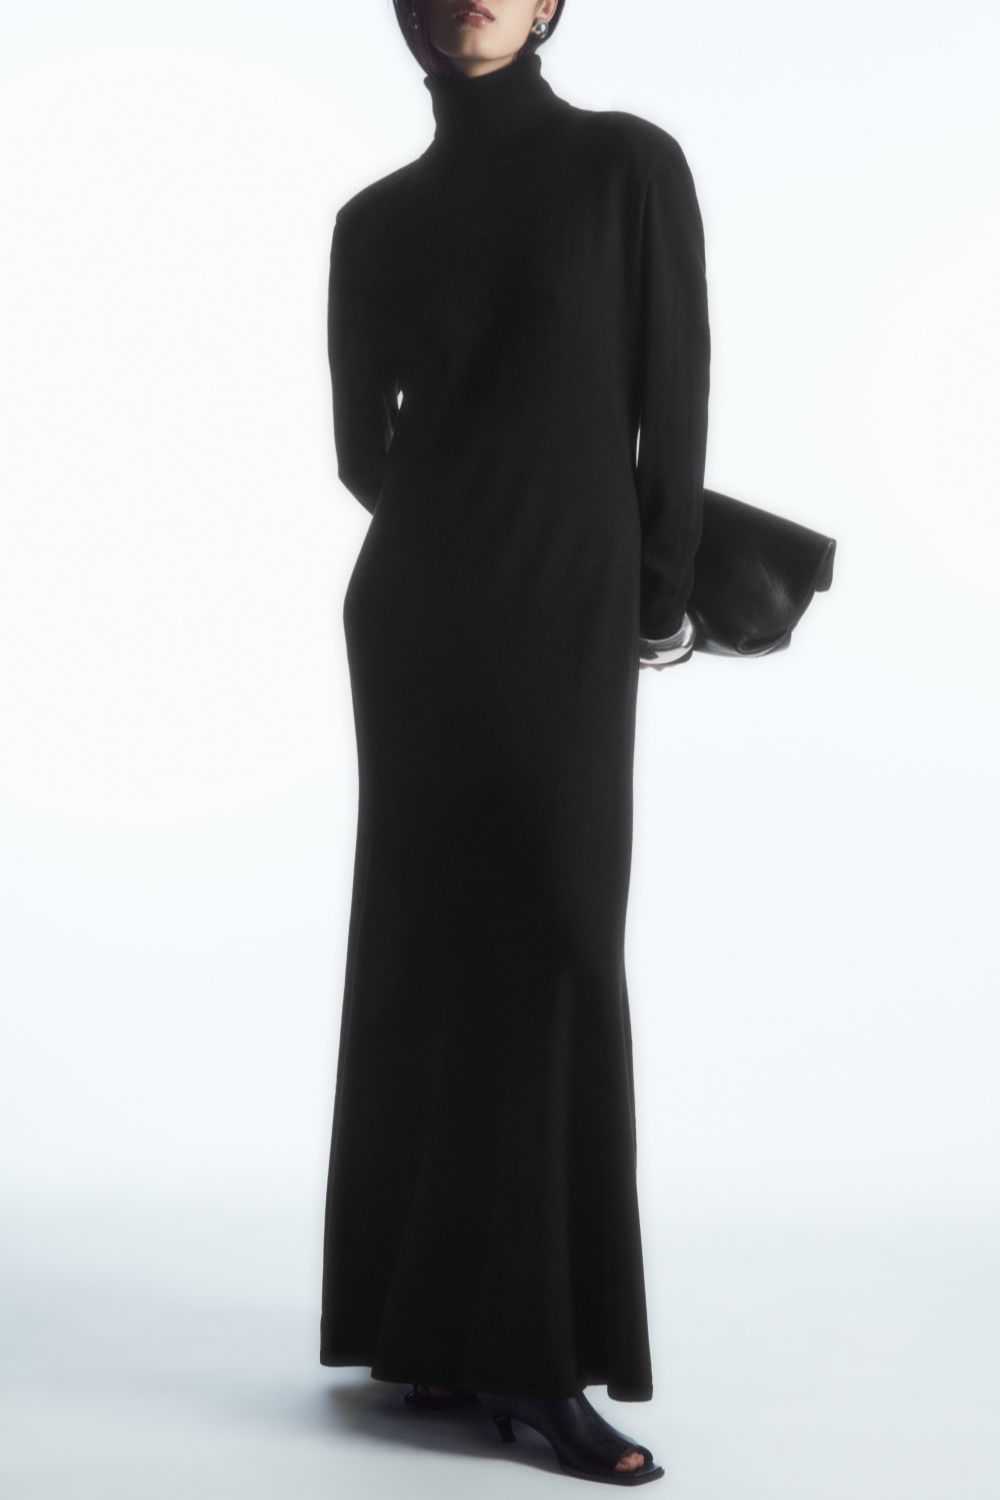 Długa sukienka dzianinowa COS, przeceniona na ok. 420 zł (Fot. materiały prasowe)